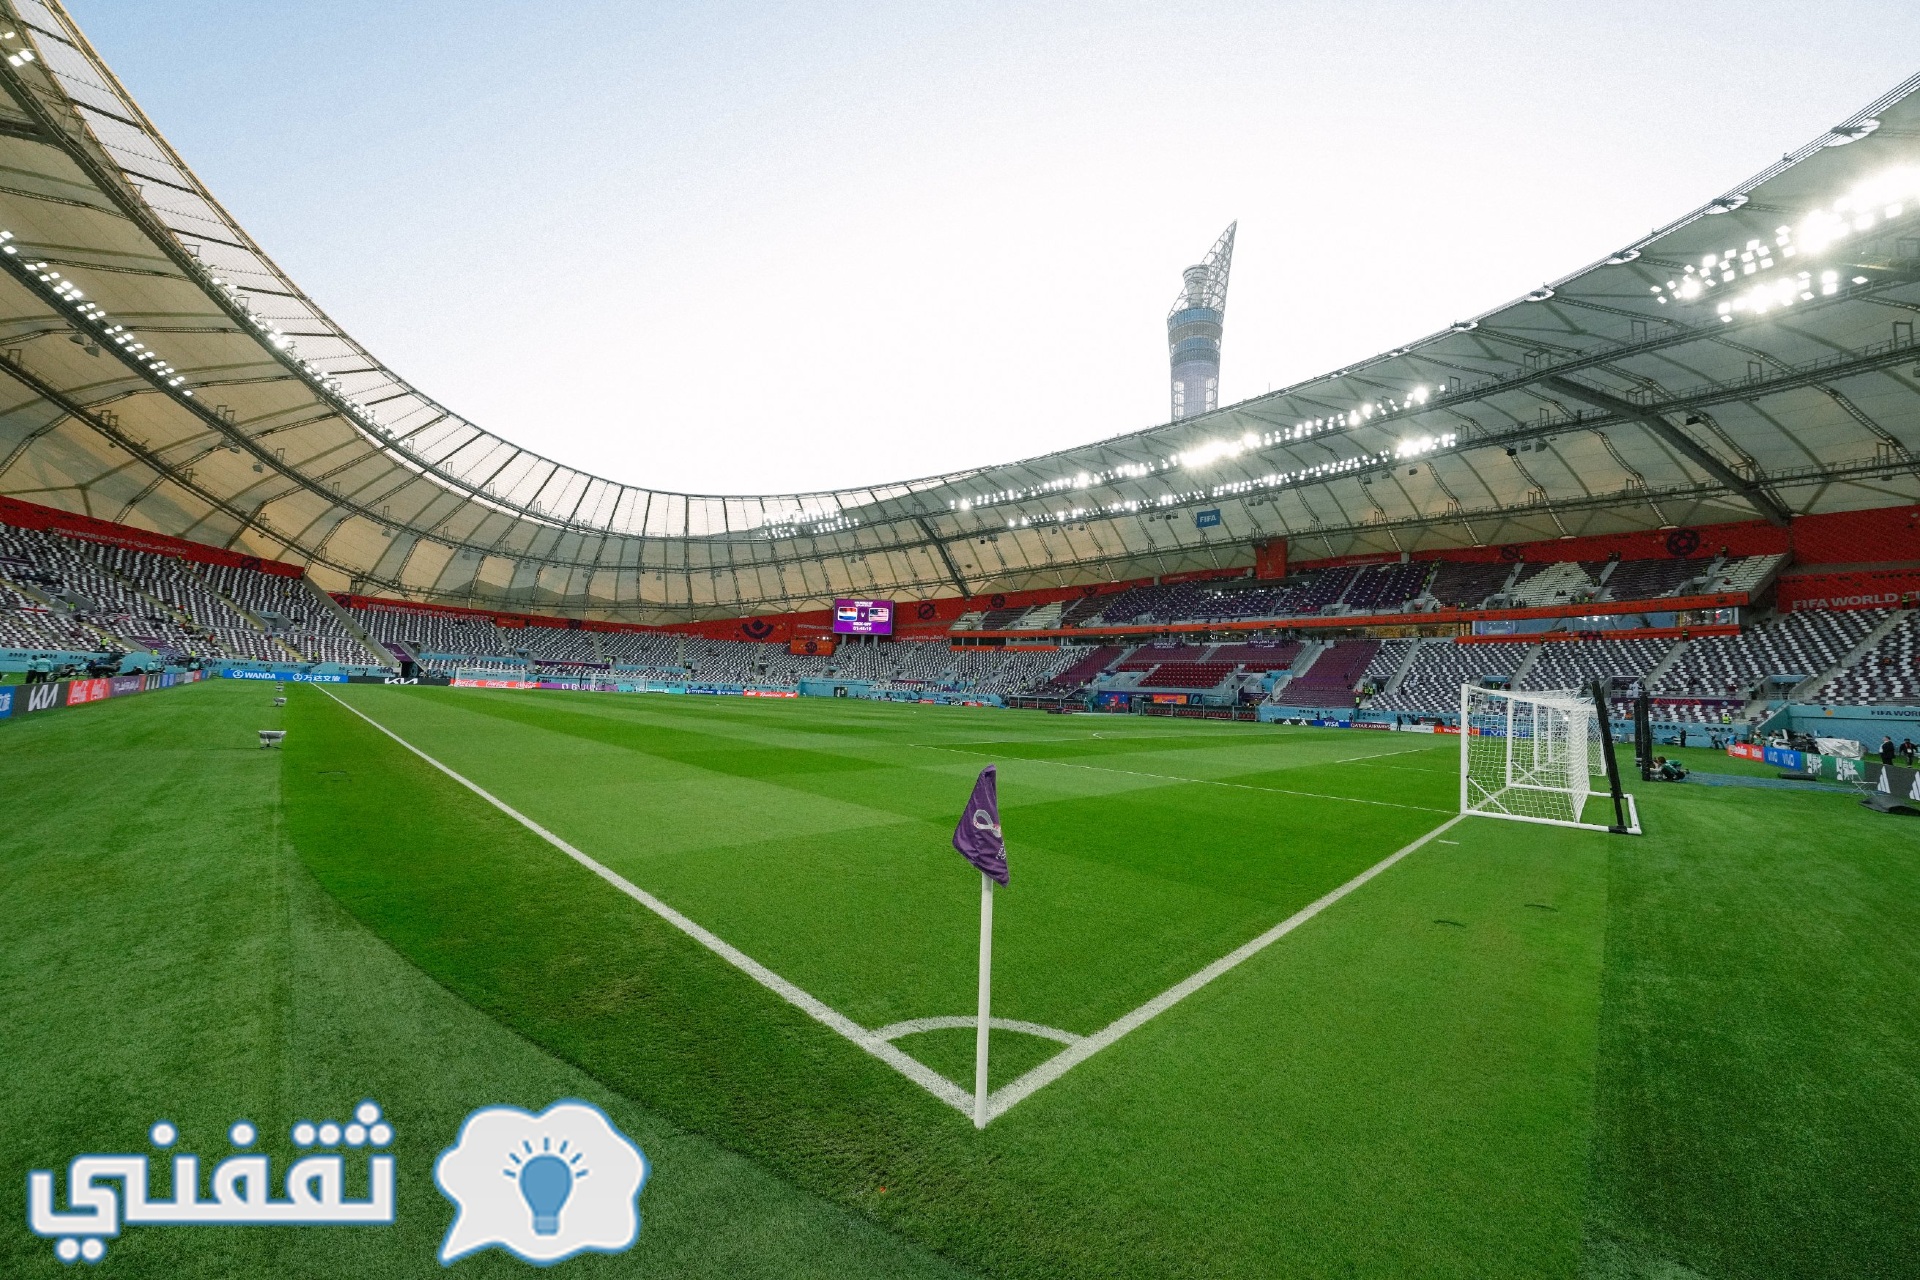 من ملعب ستاد خليفة الدولي في العاصمة القطرية الدوحة قبل مباراة هولندا وأمريكا في كأس العالم 2022